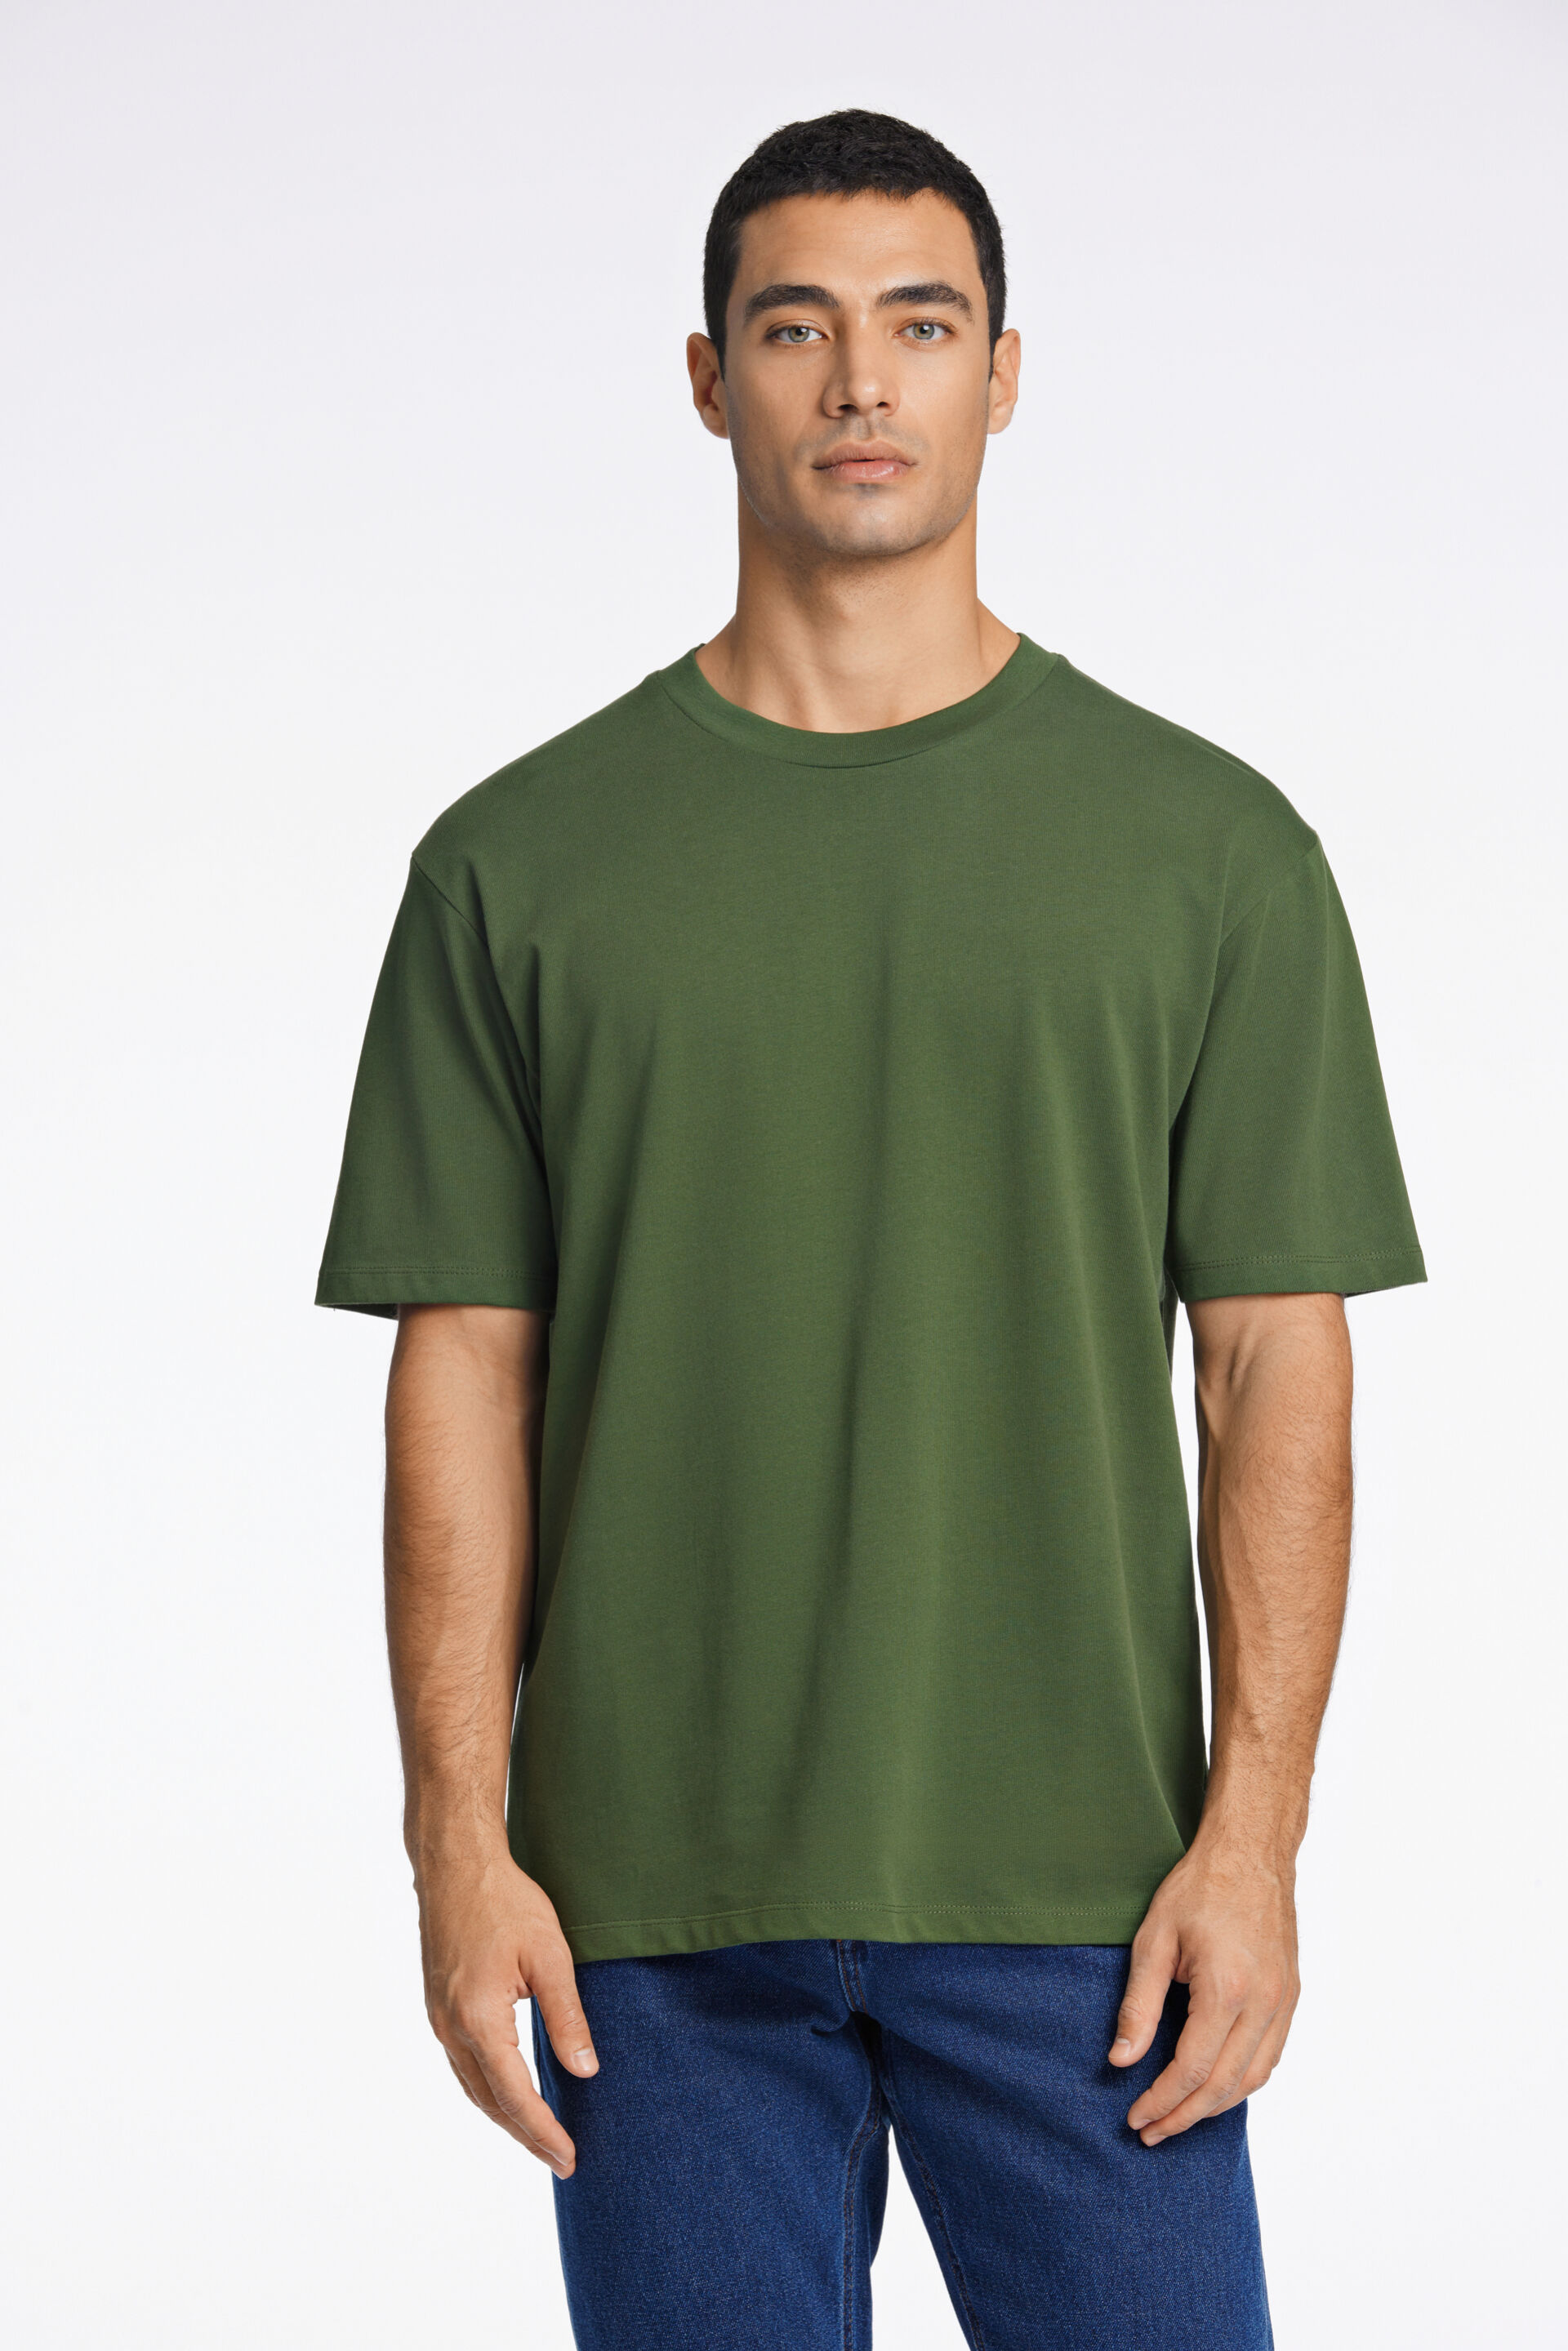 T-shirt T-shirt Grön 30-400120